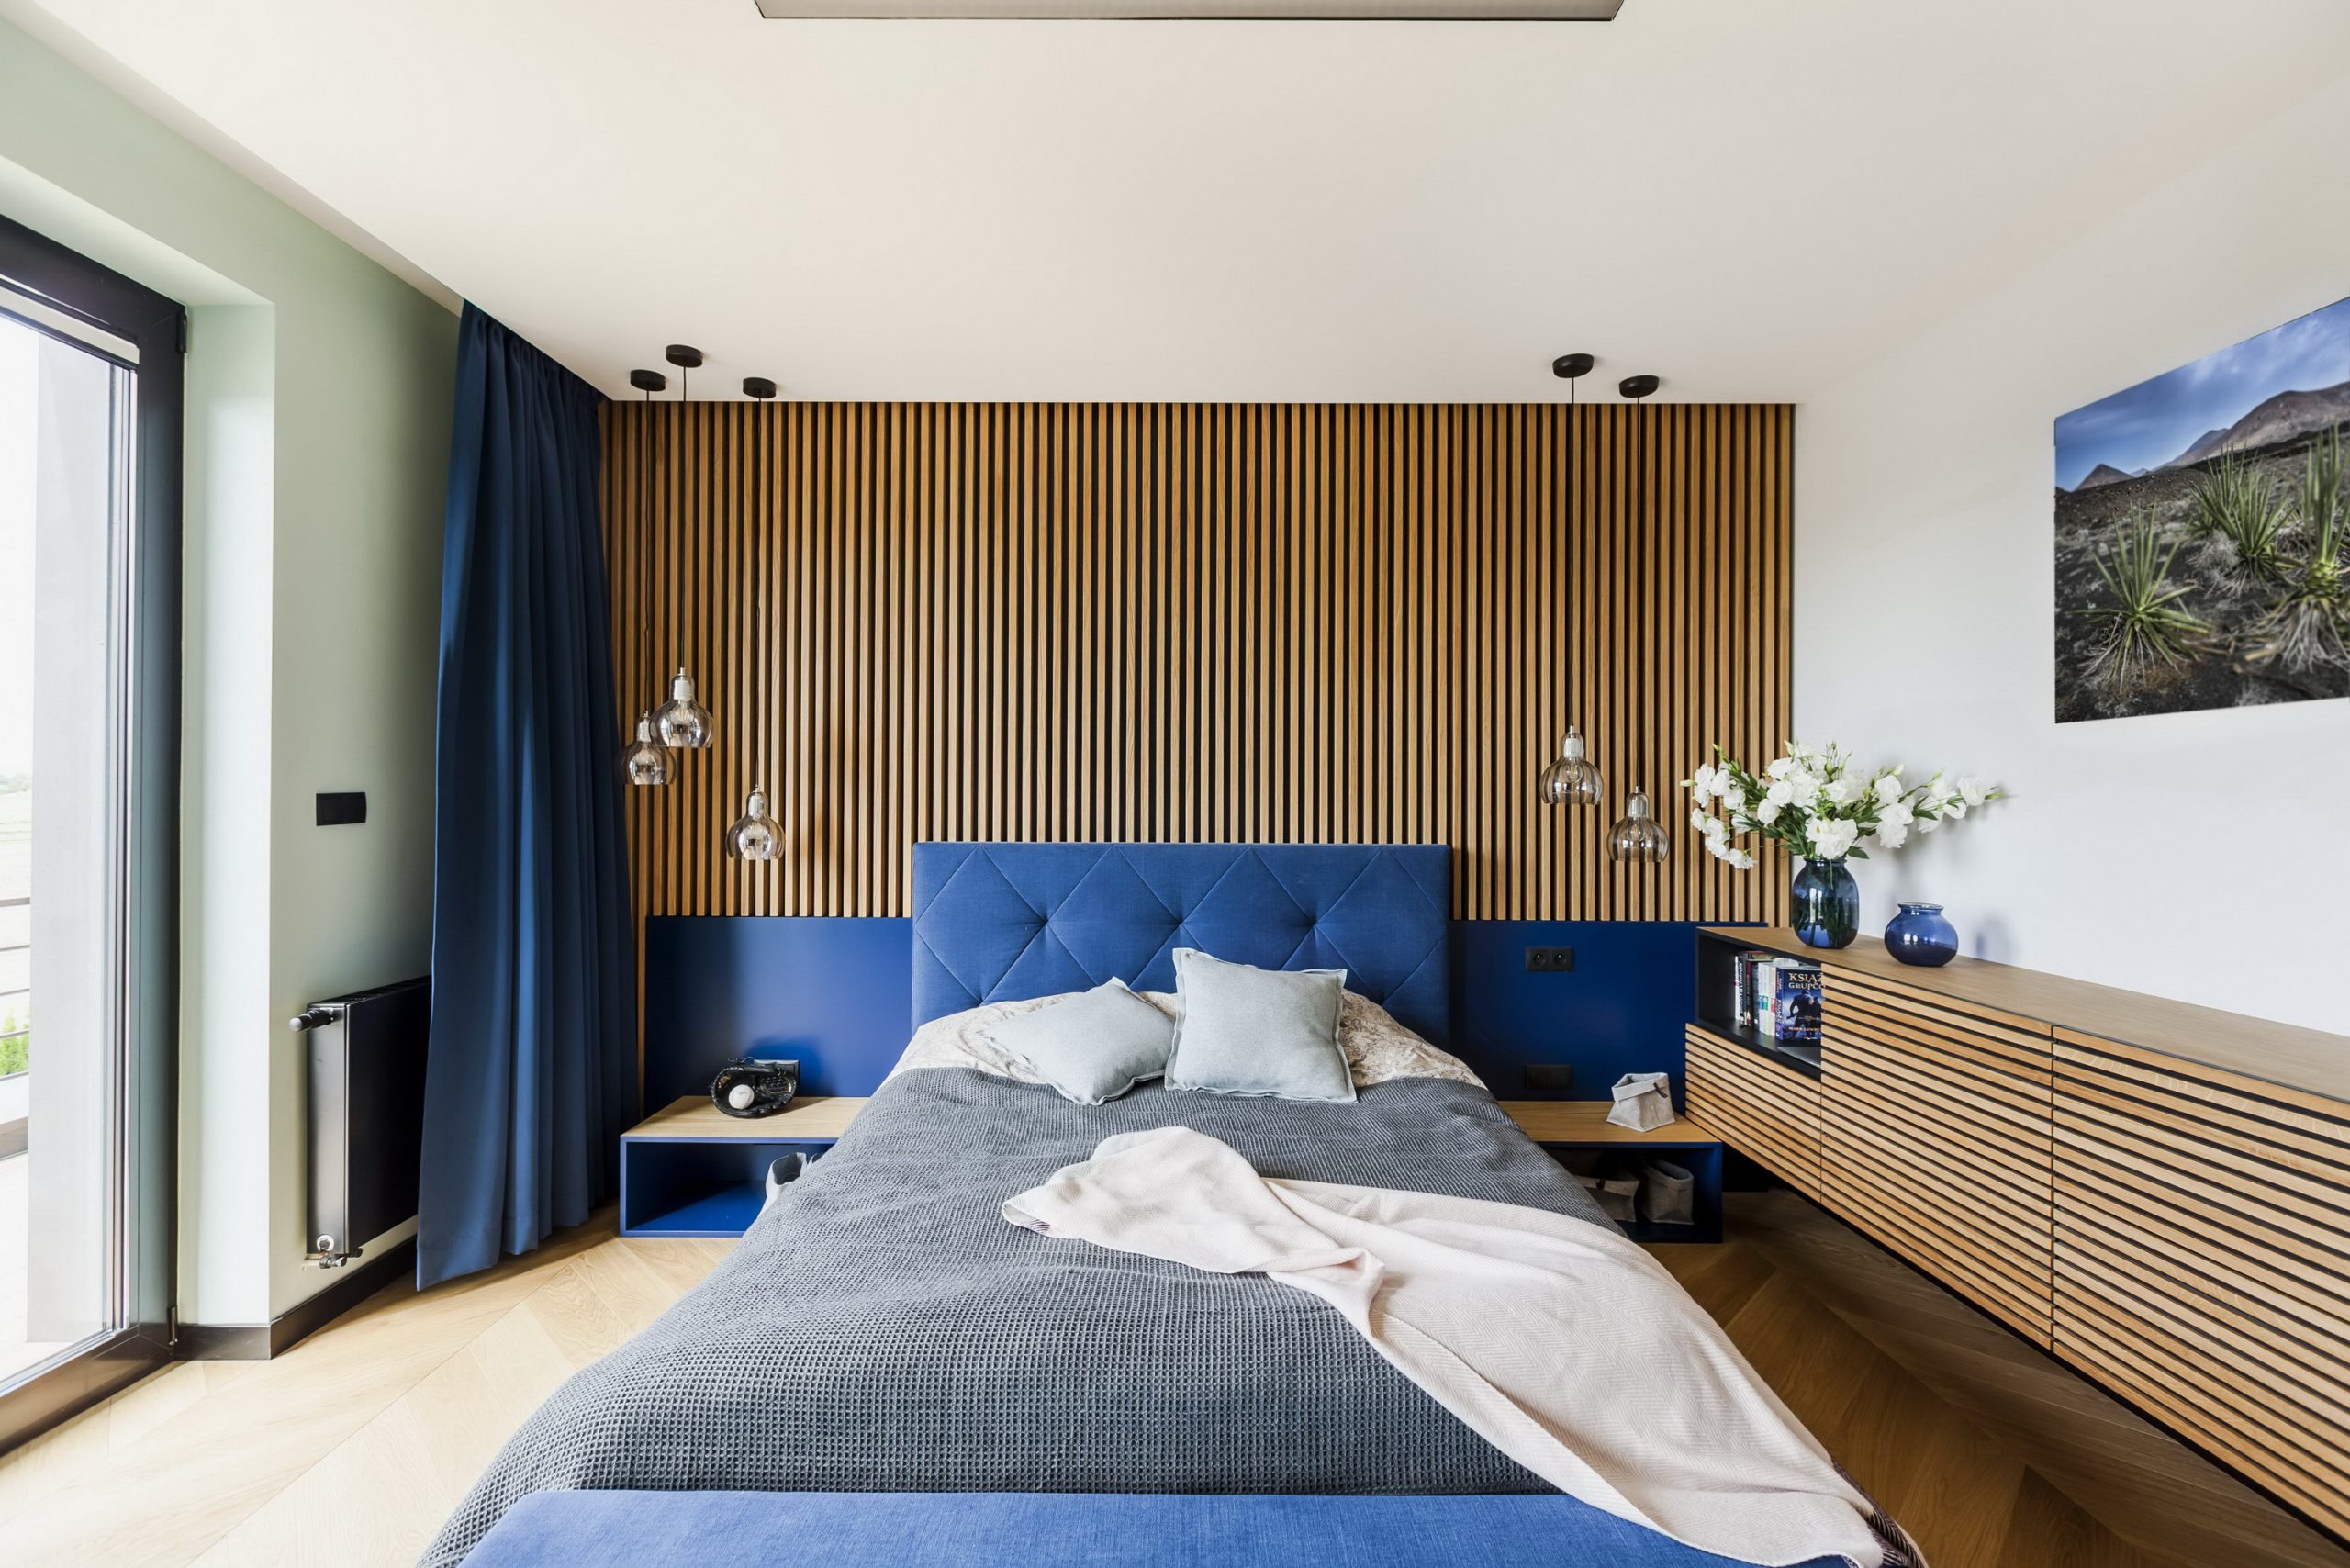 Phòng ngủ màu xanh xương được thiết kế theo phong cách cổ điển